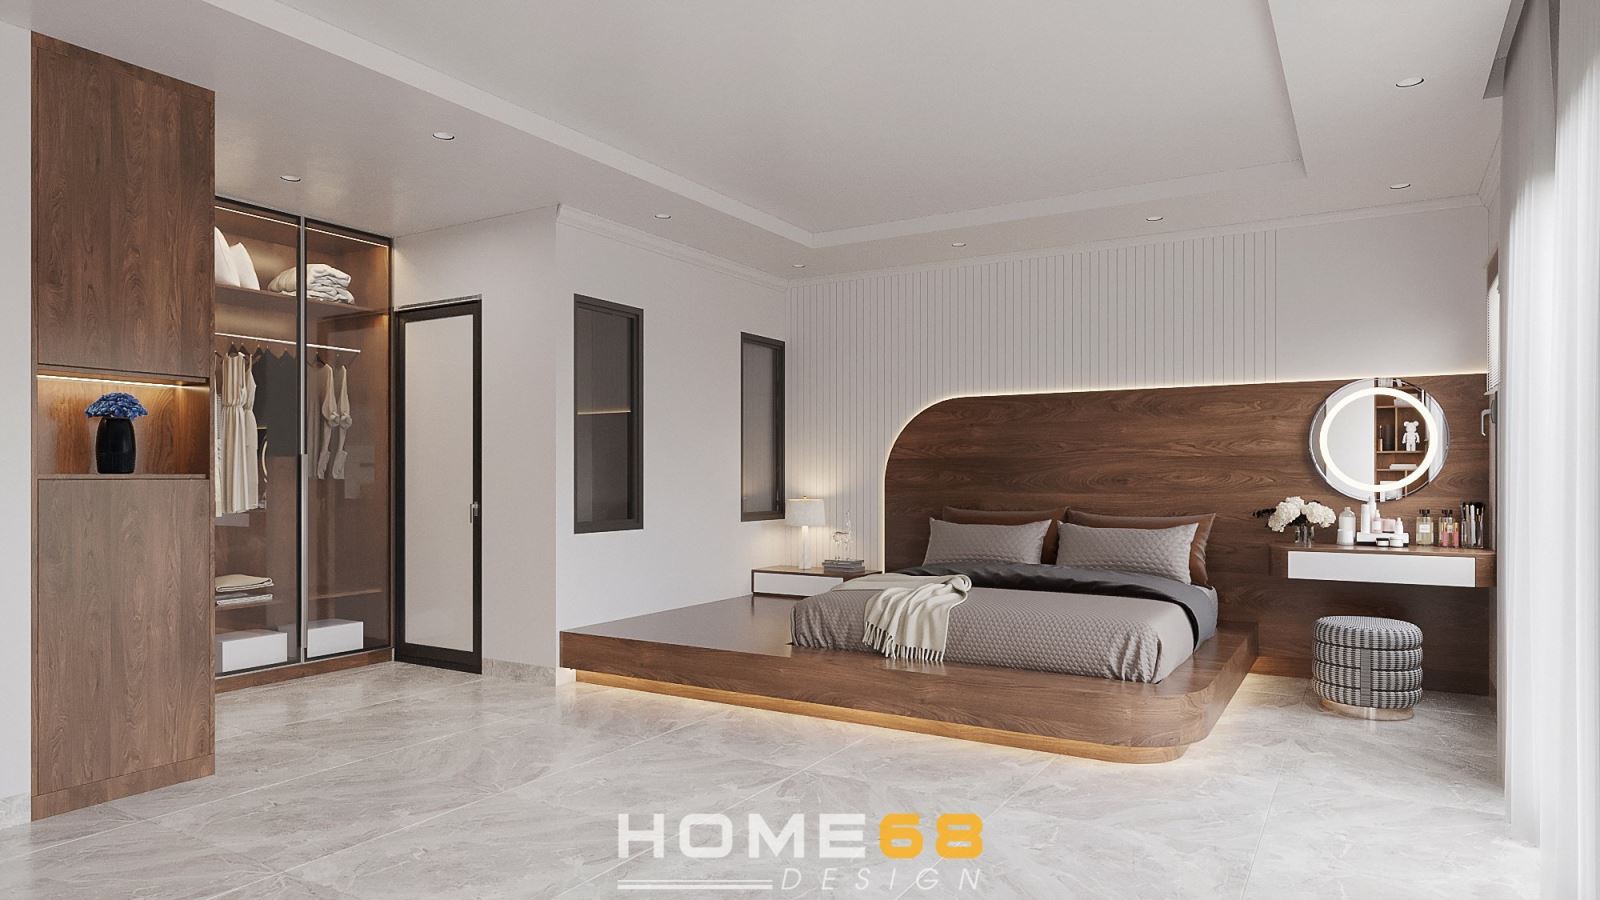 HOME68 thiết kế nội thất phòng ngủ master hiện đại, ấn tượng